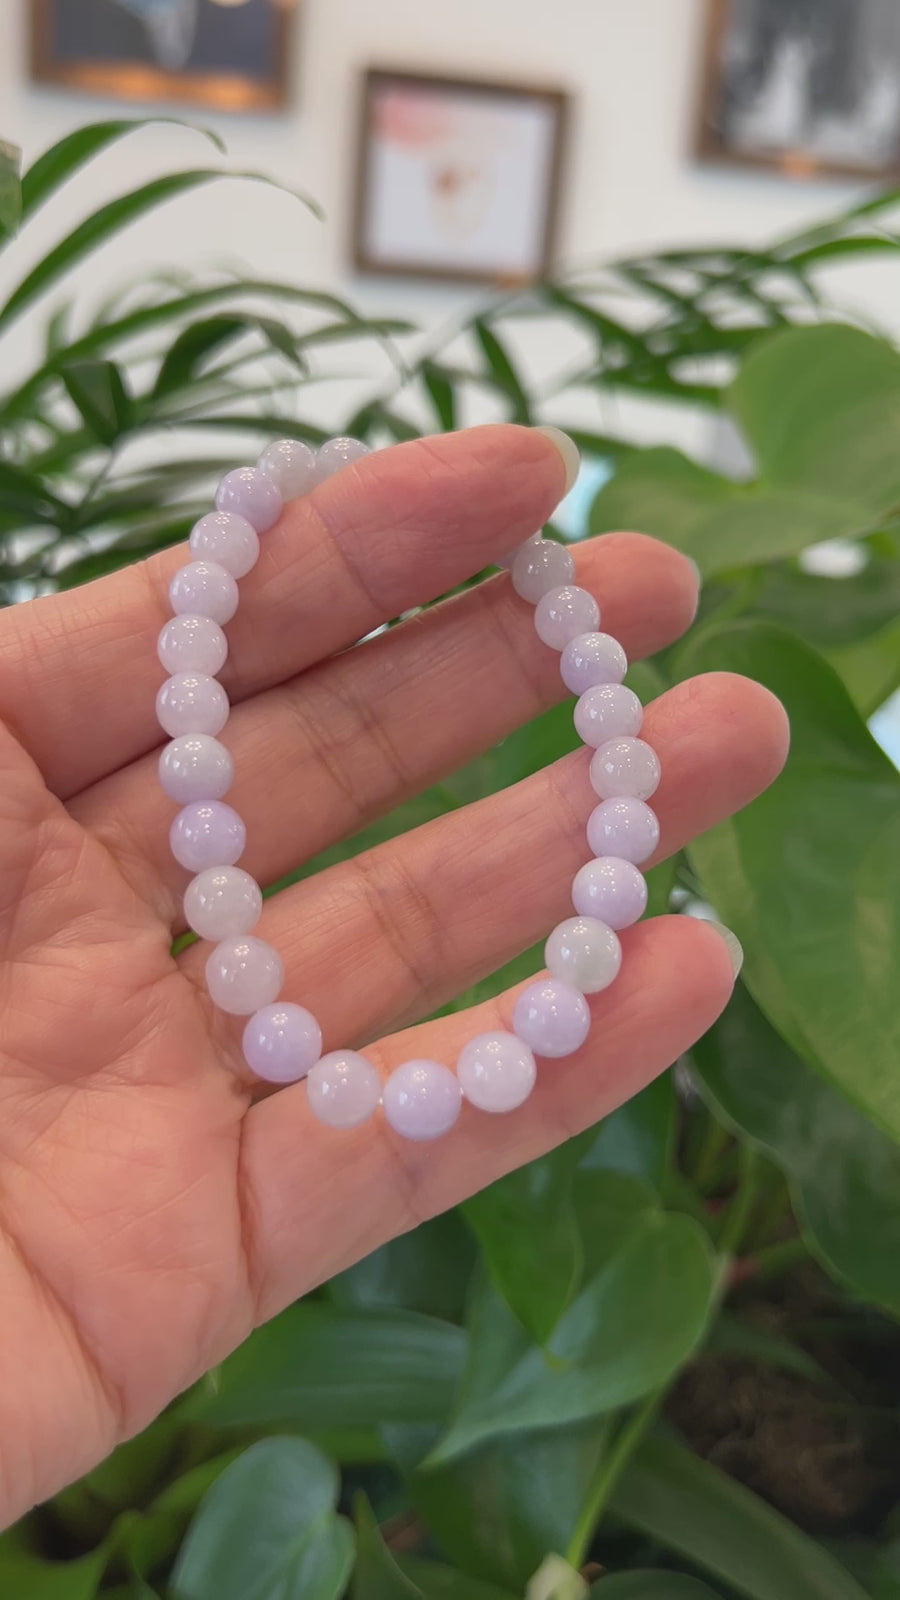 Jadeite Jade 7.5 mm Round Lavender Beads Bracelet ( 7.5 mm )